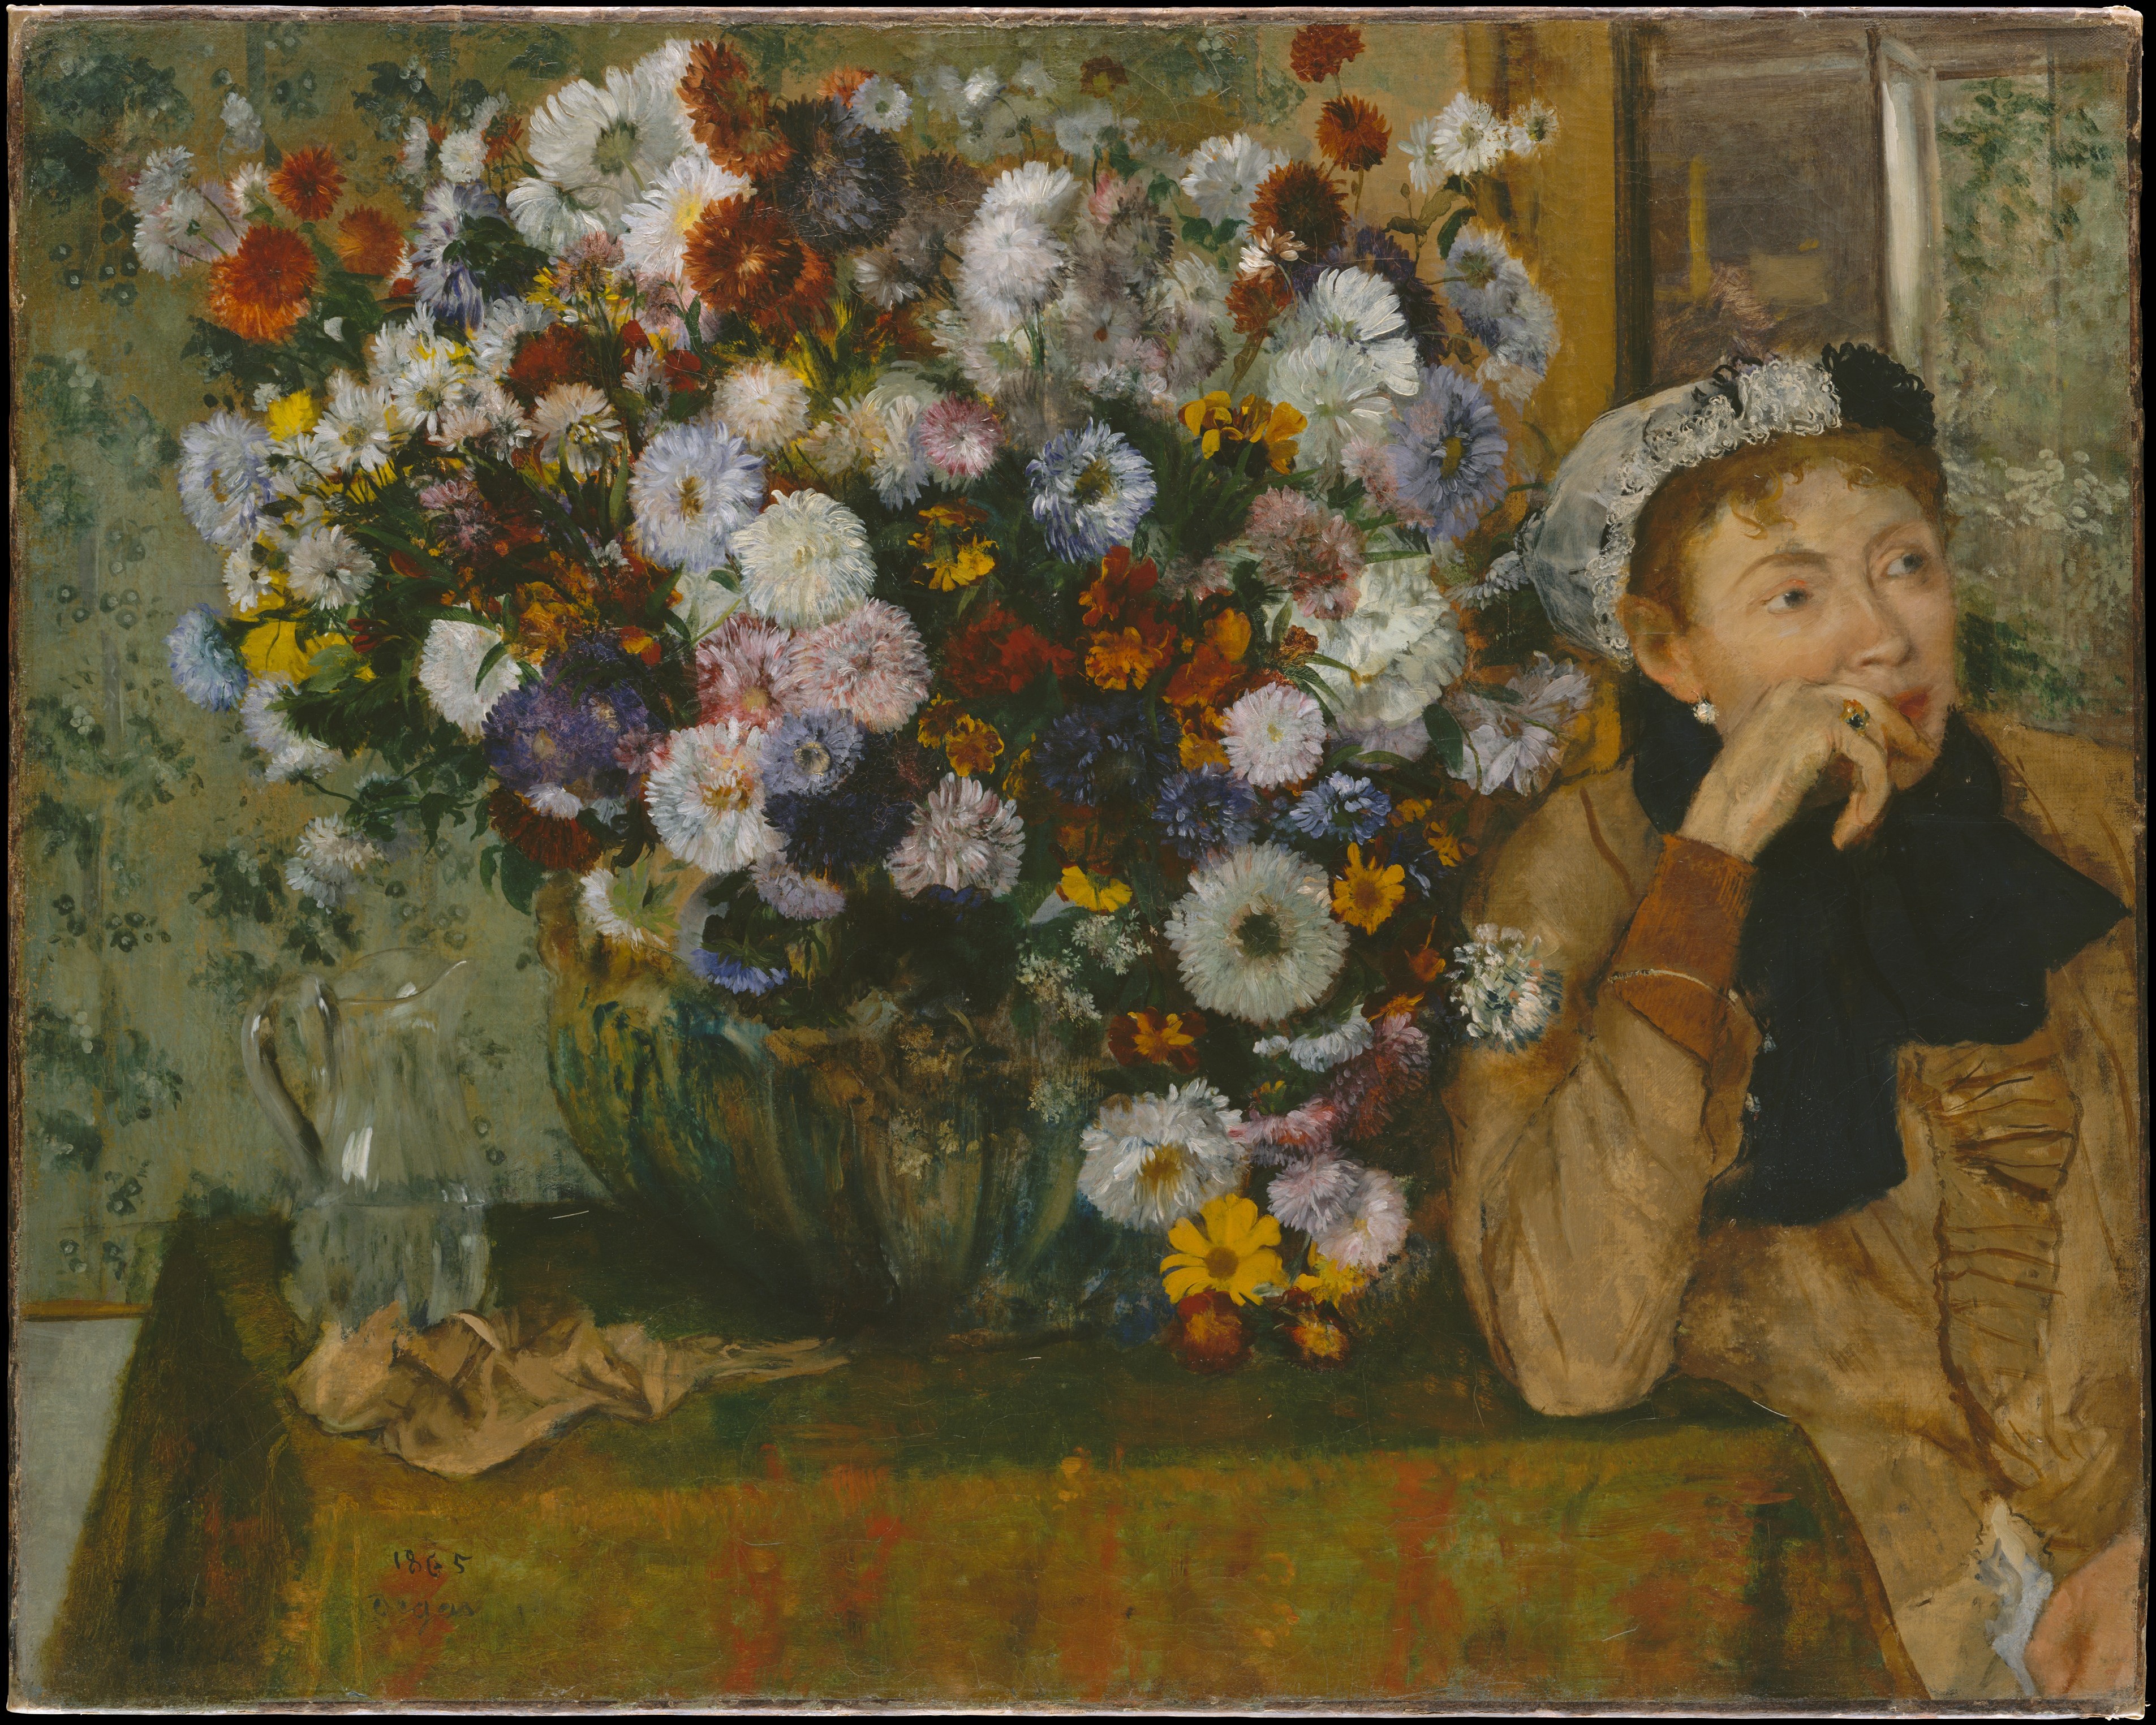 Een vrouw zittend naast een vaas met bloemen (Madame Paul Valpinçon?) by Edgar Degas - 1865 - 73.7 x 92.7 cm 